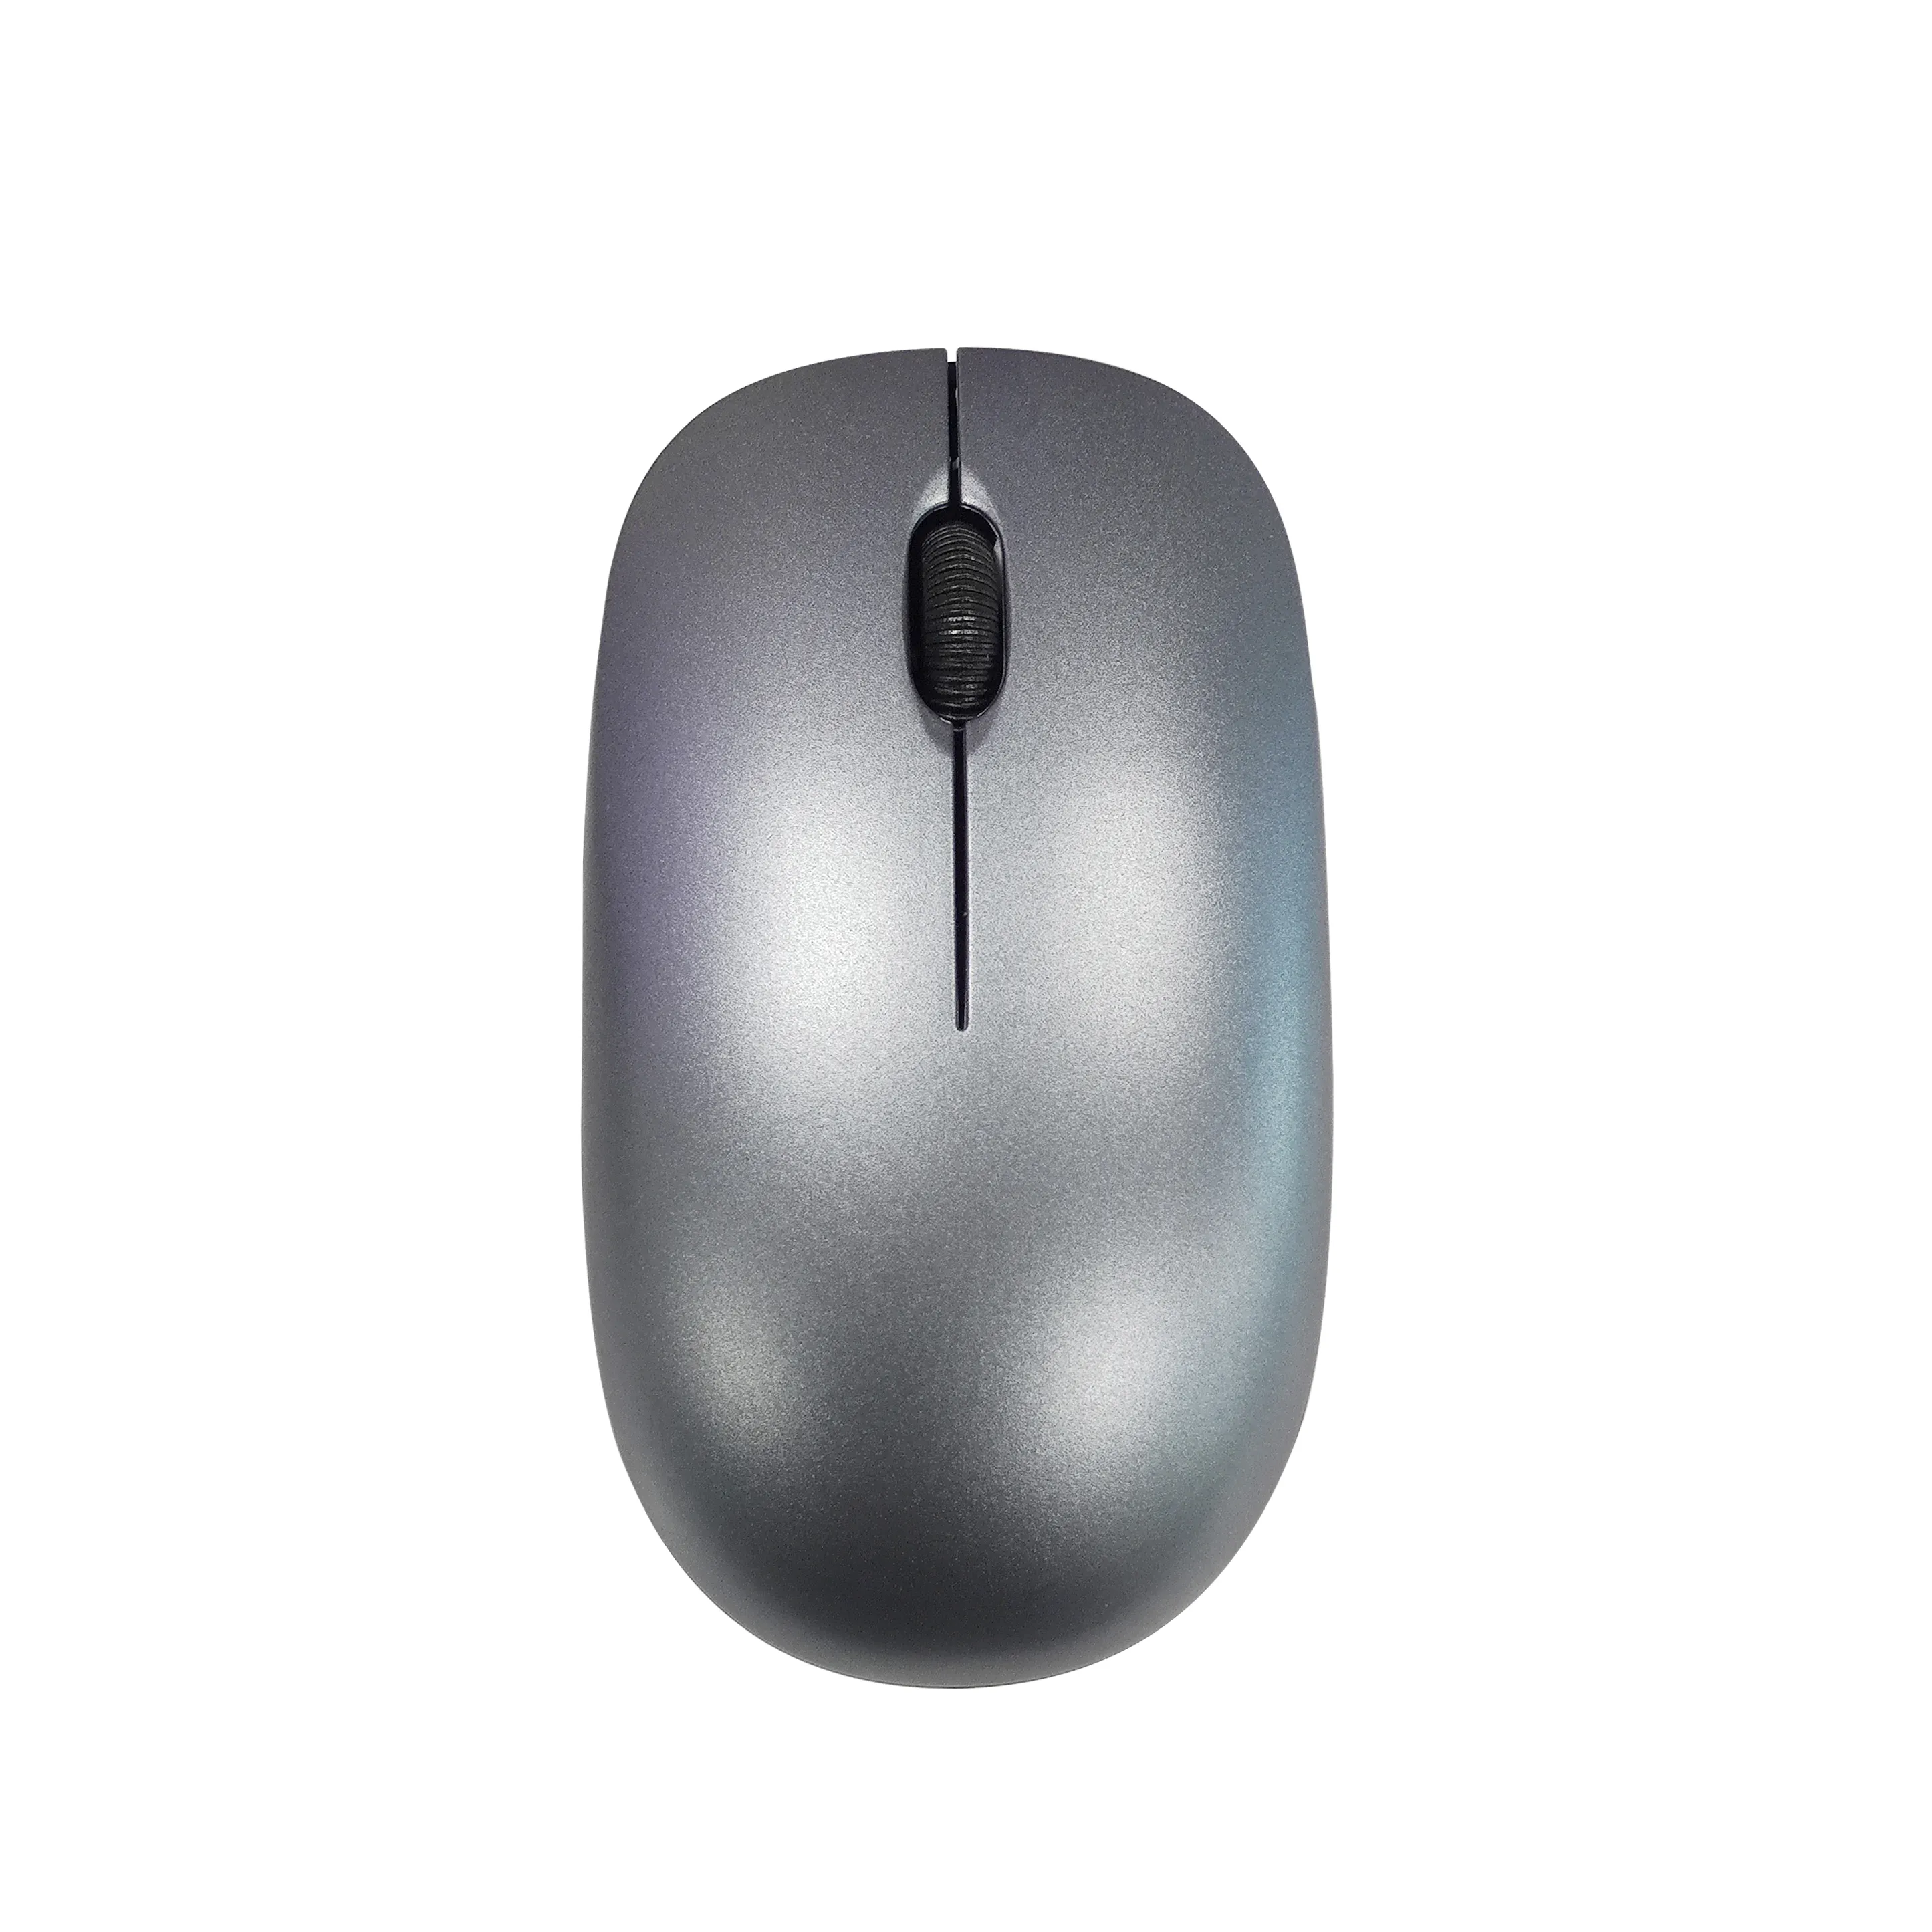 Mouse nirkabel komputer senyap merek OEM, Mouse optik nirkabel 2.4Ghz USB untuk kantor